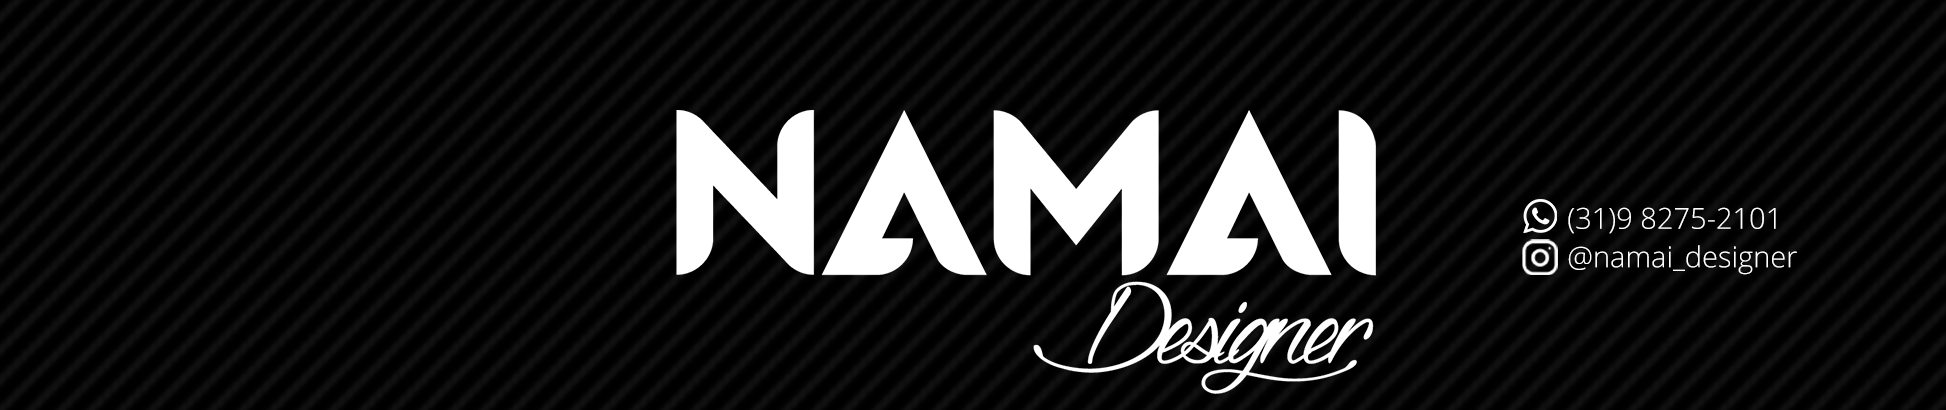 Namai Designer 的个人资料横幅